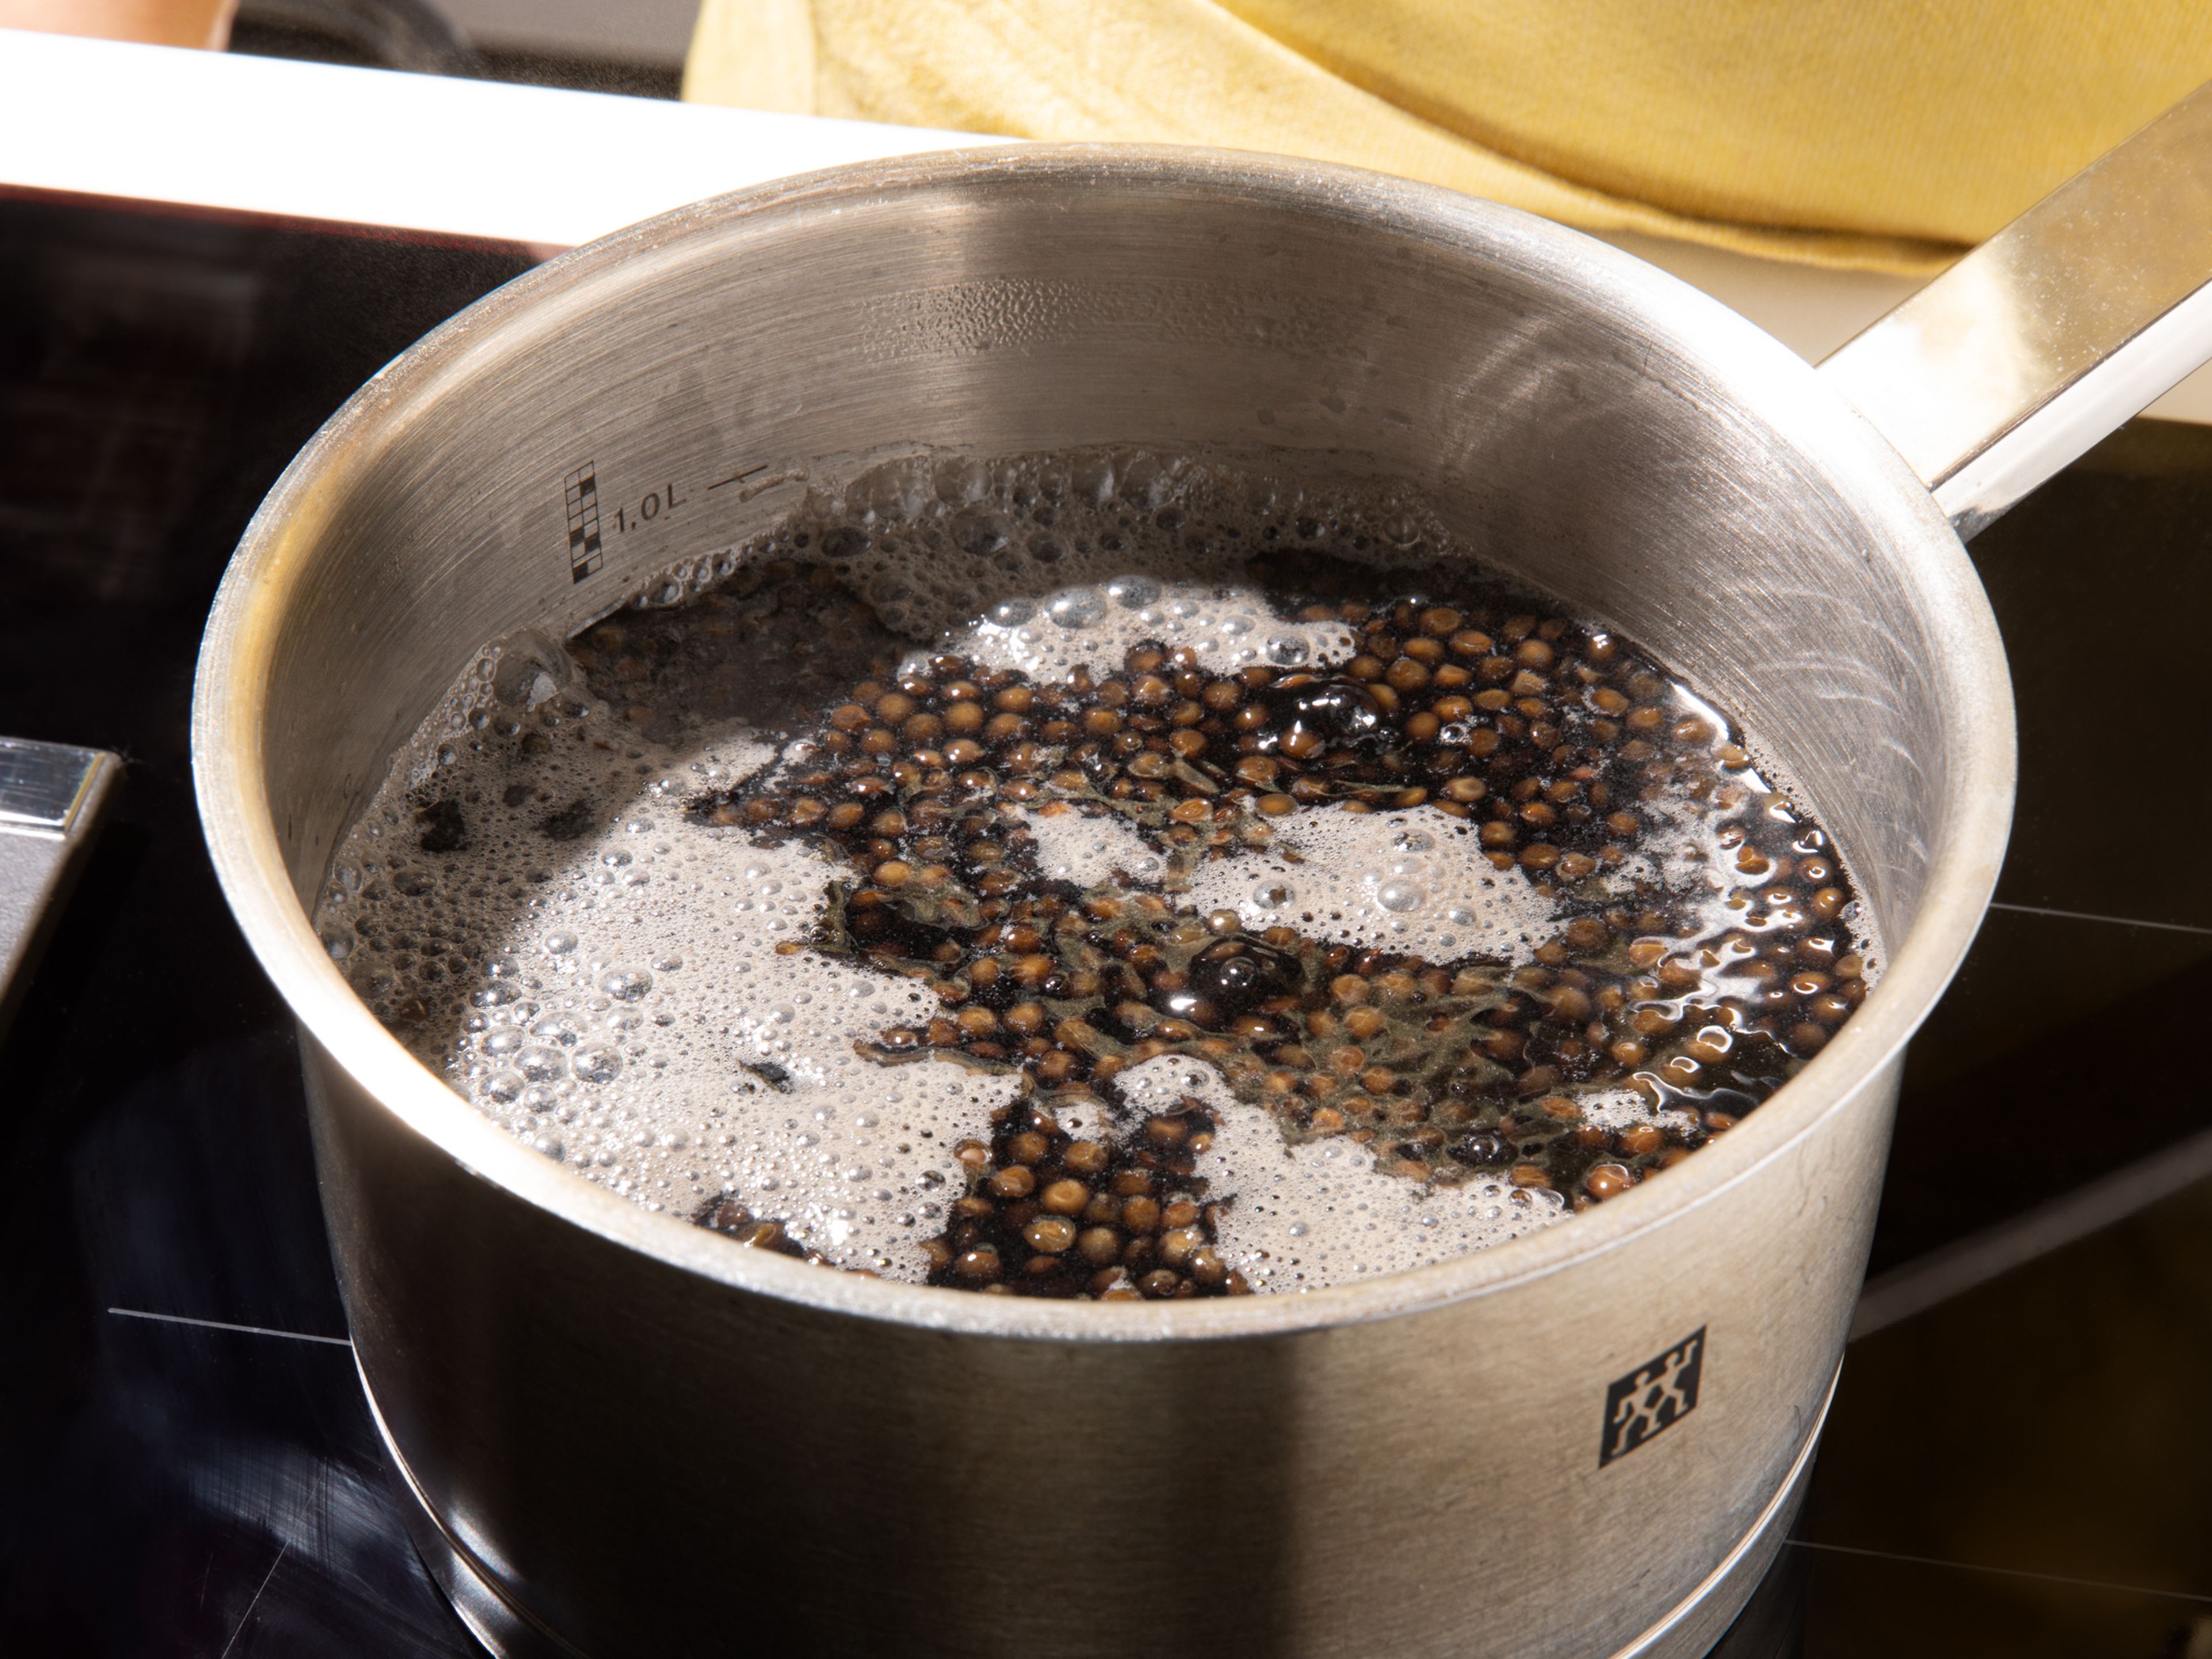 Linsen abspülen, in einen Topf geben und mit 5 cm Wasser bedecken. Zum Kochen bringen, die Hitze auf mittlere bis niedrige Stufe reduzieren und mit geschlossenem Deckel ca. 20-30 Min. köcheln lassen. Abgießen und mit Salz abschmecken.